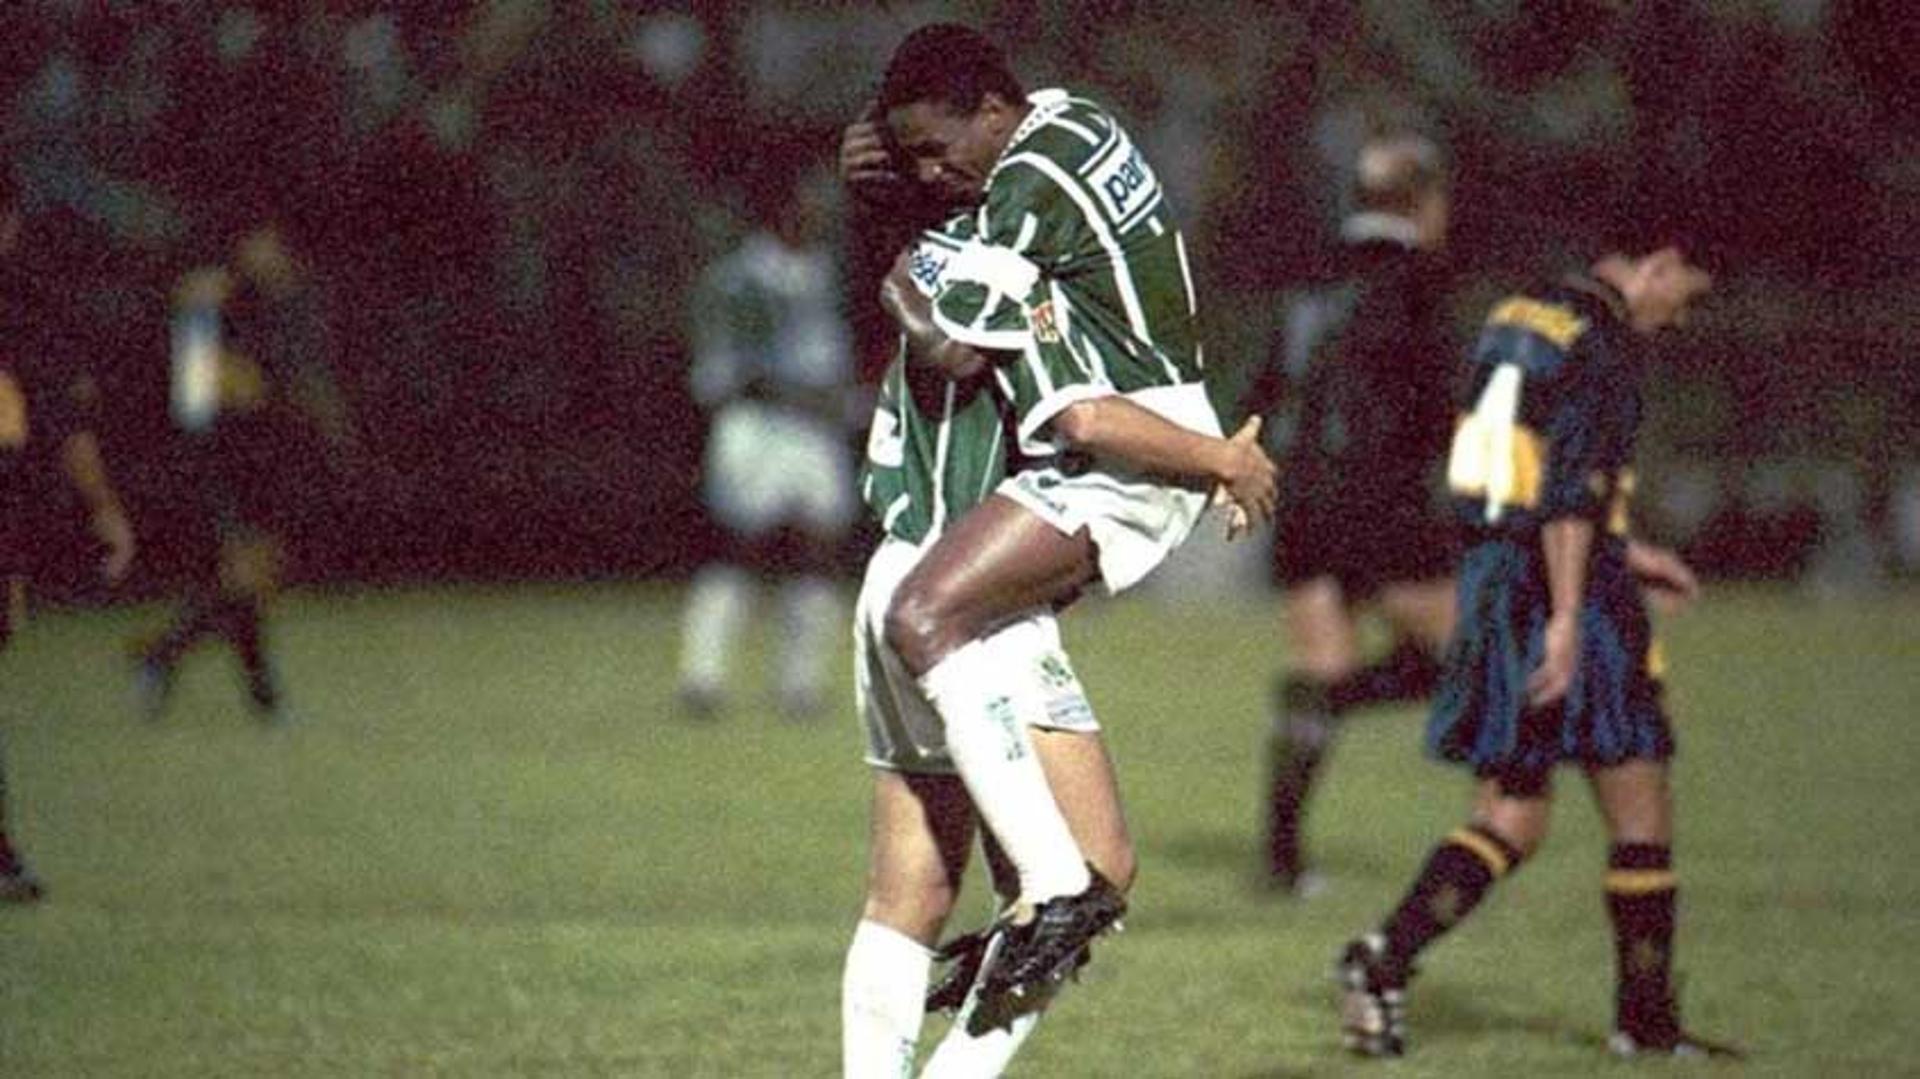 Palmeiras x Boca Juniors - 1994 - 6x1 - Palestra Itália, São Paulo (BRA) - Libertadores, 1ª fase (09/03/1994)